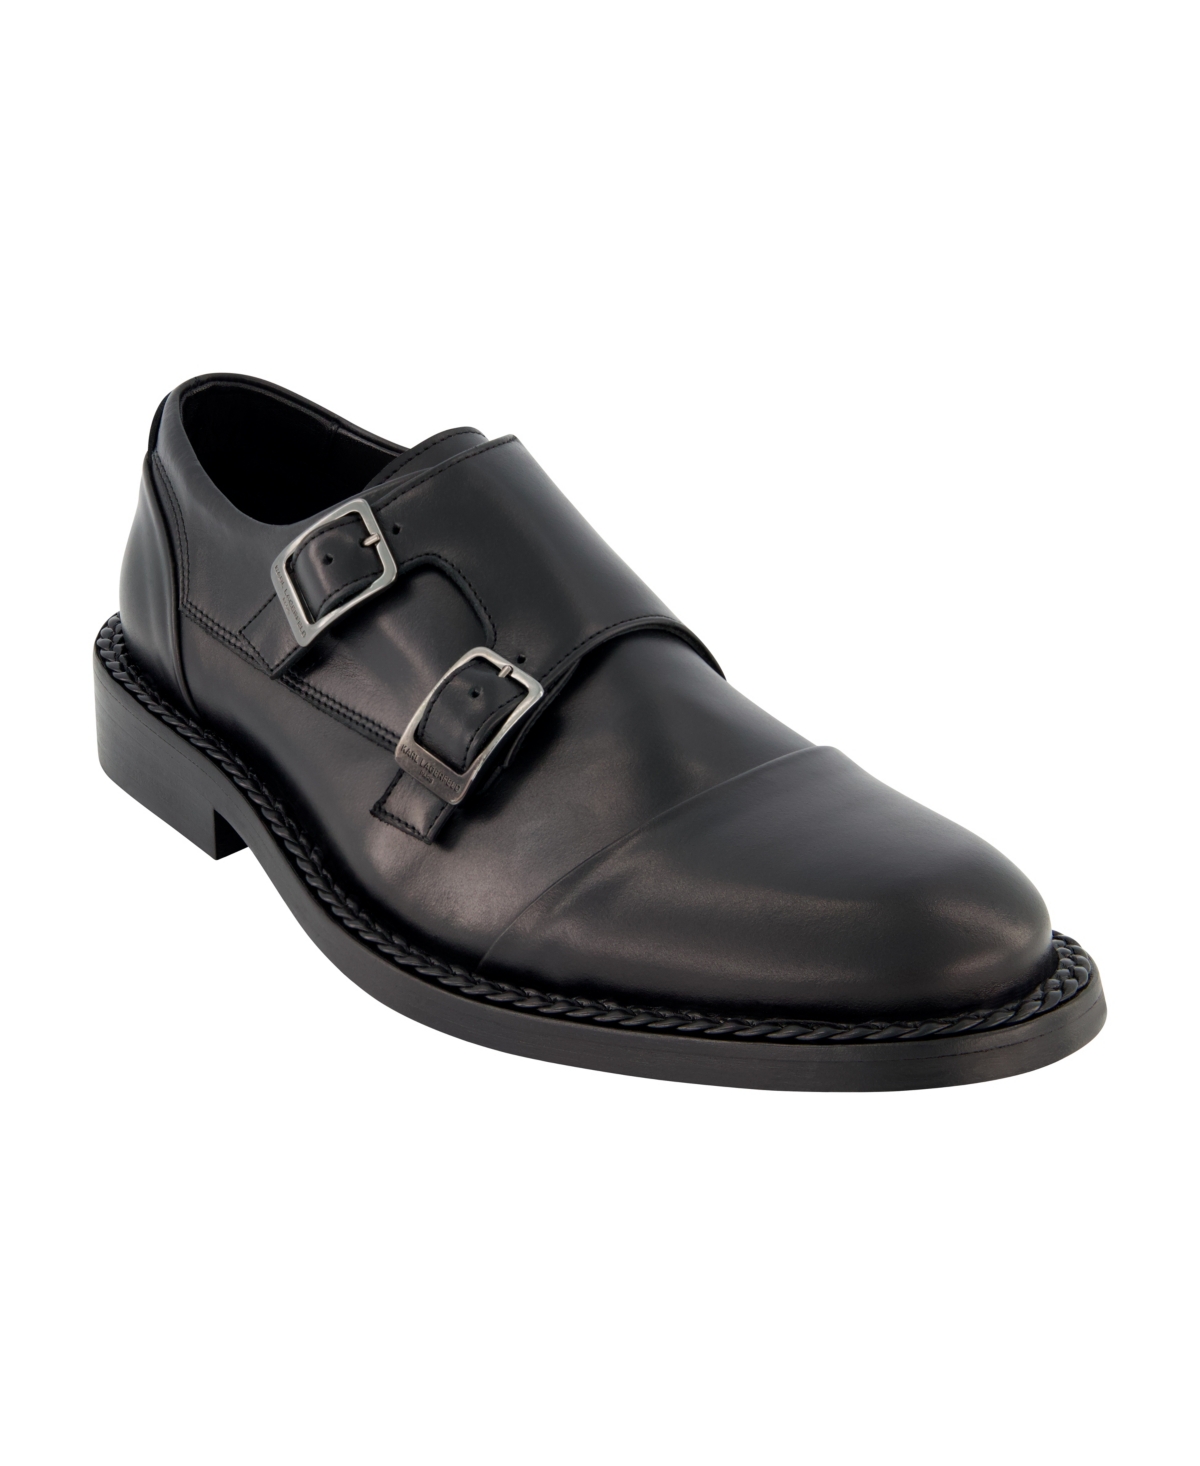 Men's Leather Double Monk Cap Toe Dress Shoes - Brown